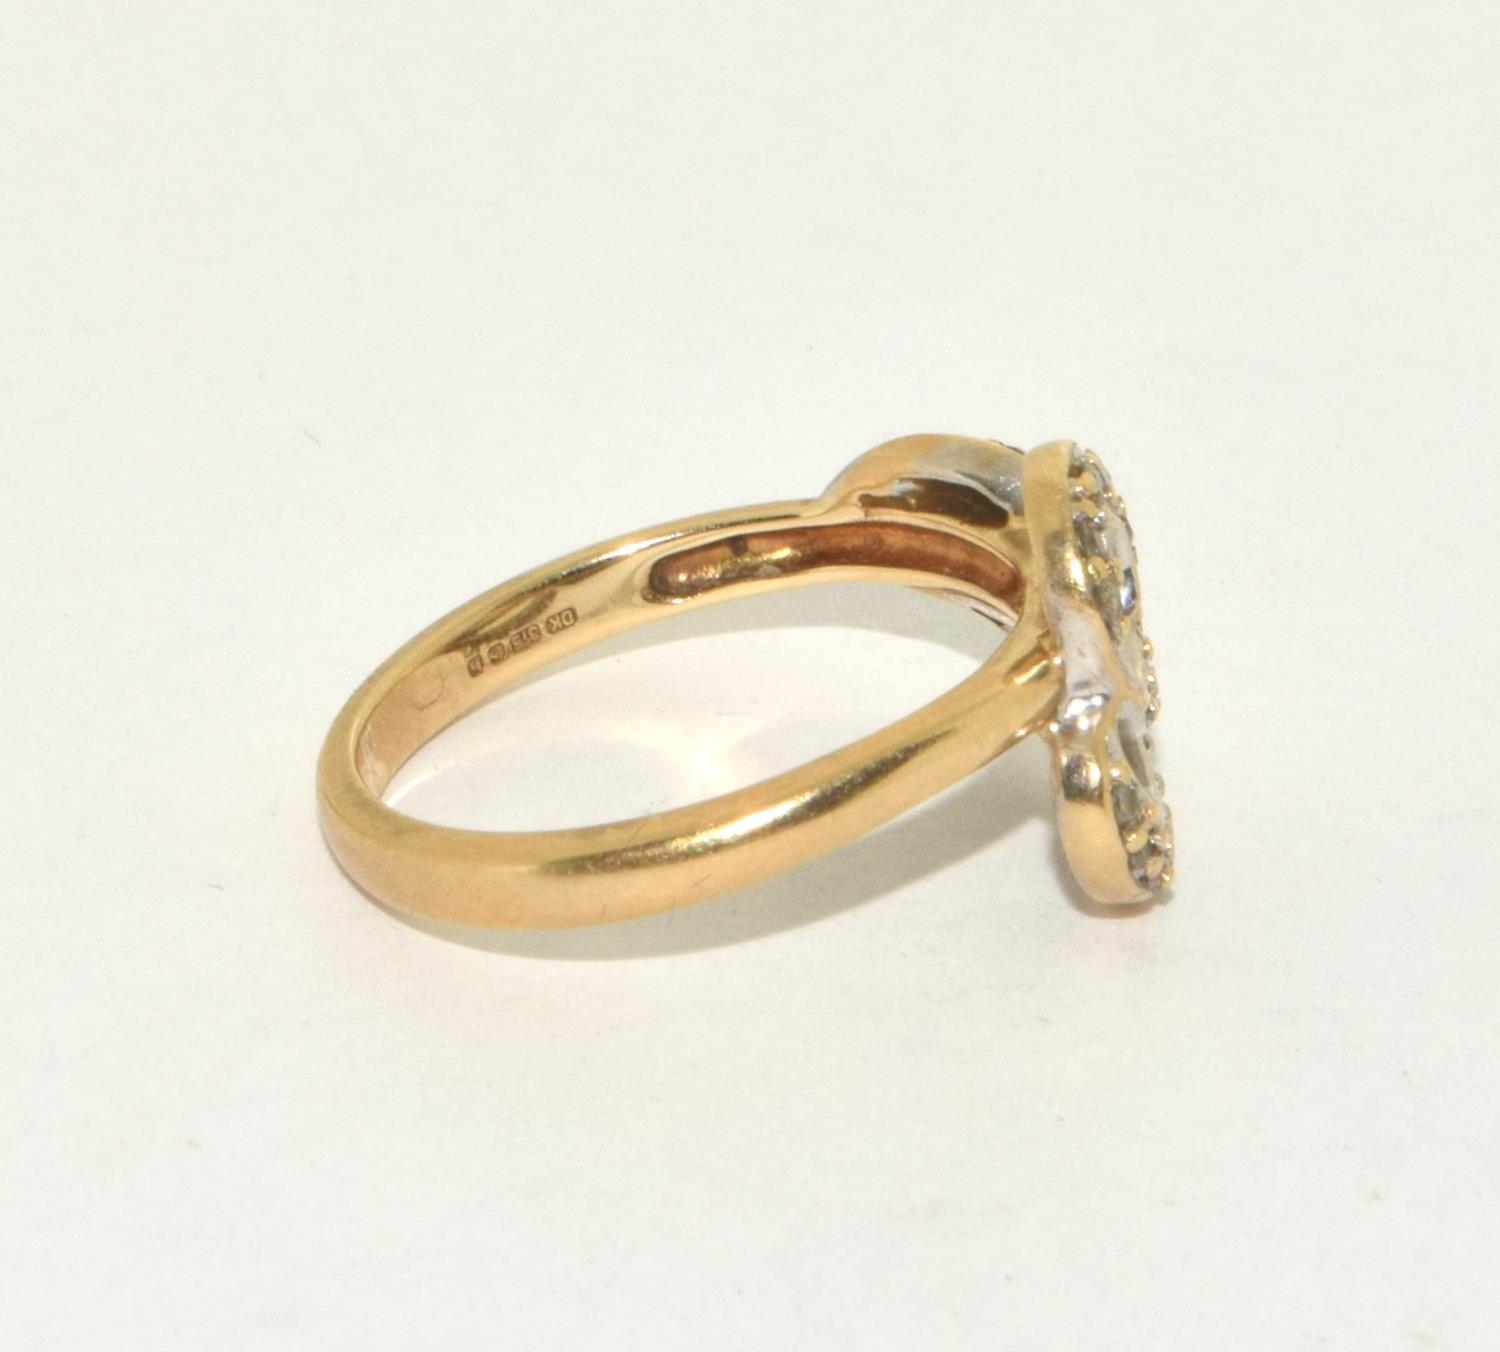 9ct gold ladies designer Diamond swirl ring size N - Image 4 of 5